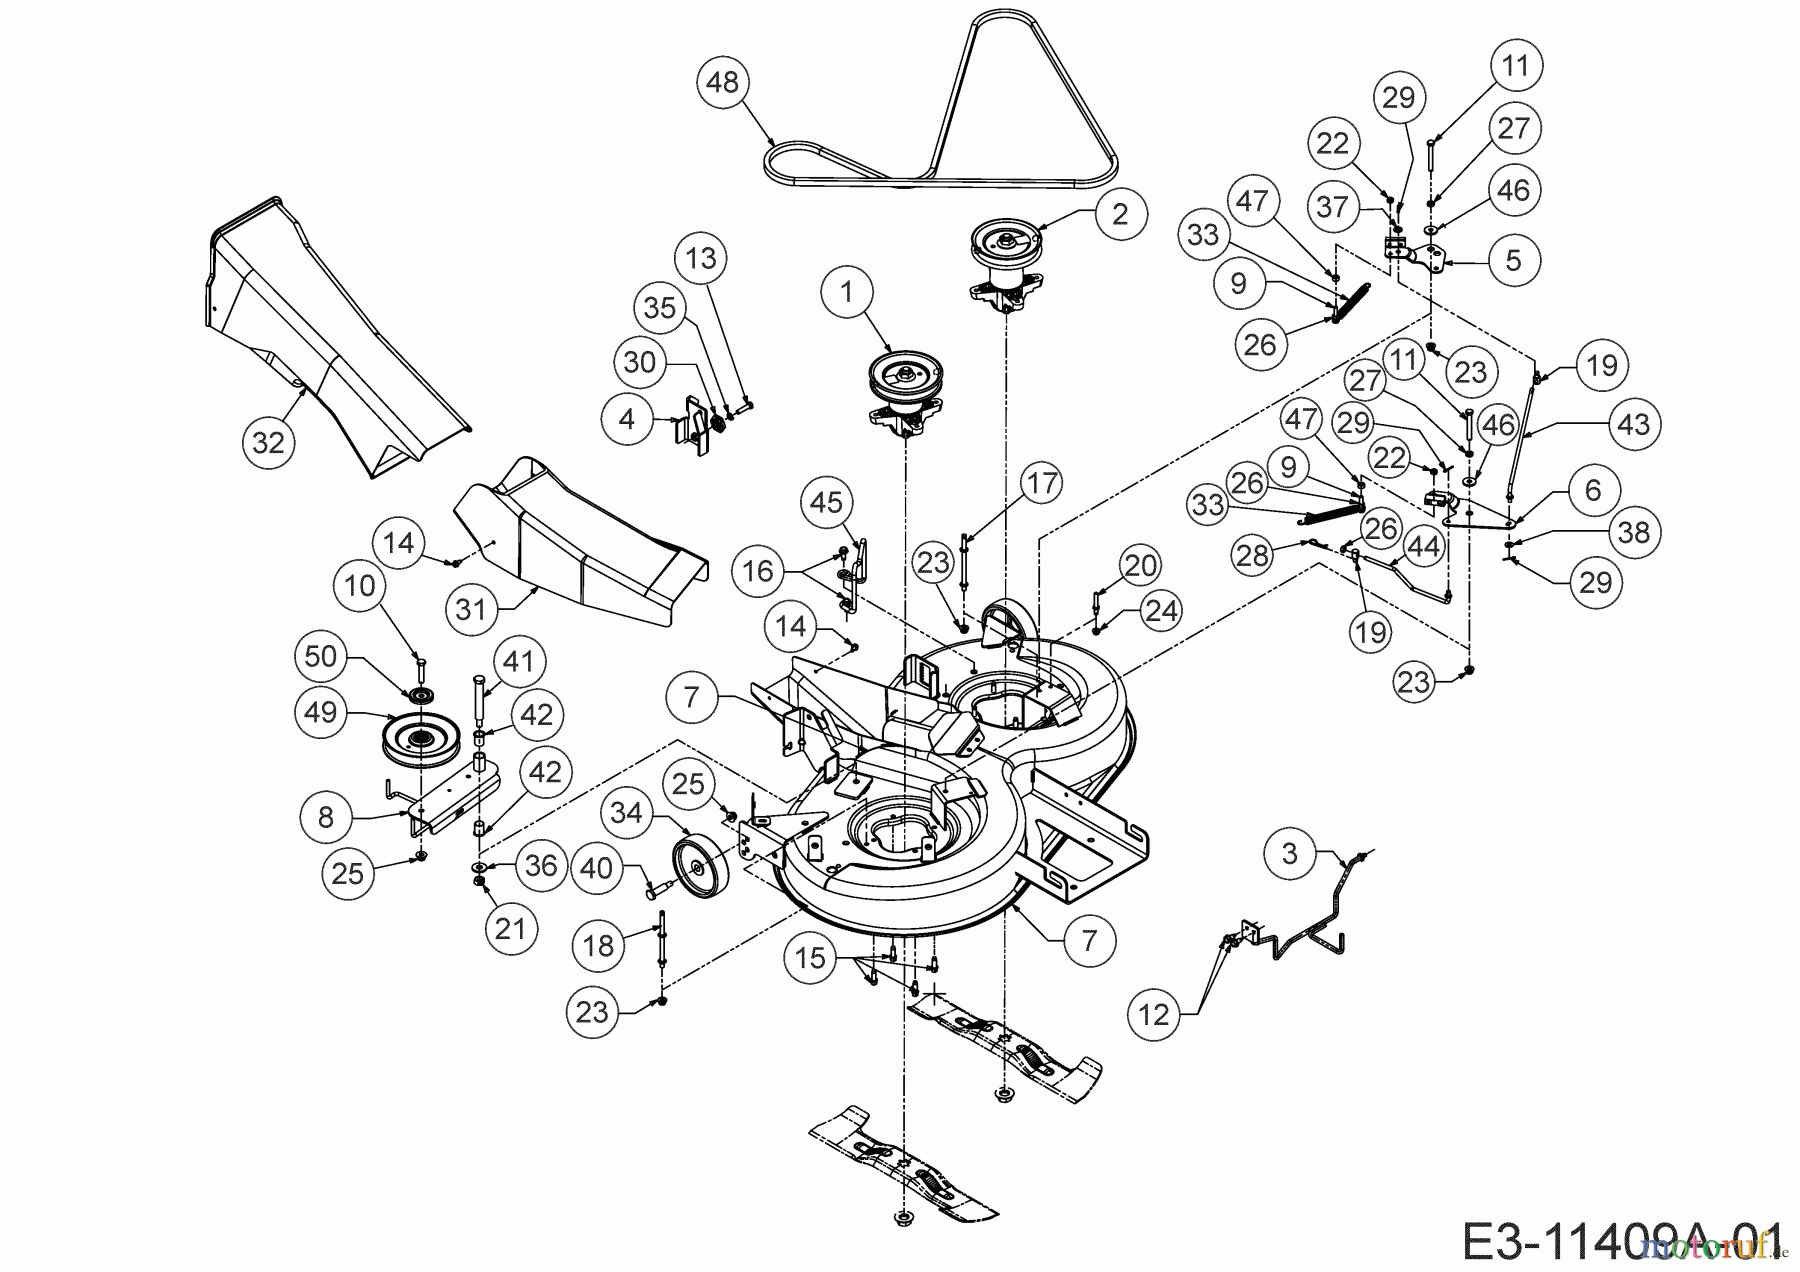  Lux Tools Tracteurs de pelouse B-RT-165/92 13IN77SE694  (2019) Plateau de coupe E (36